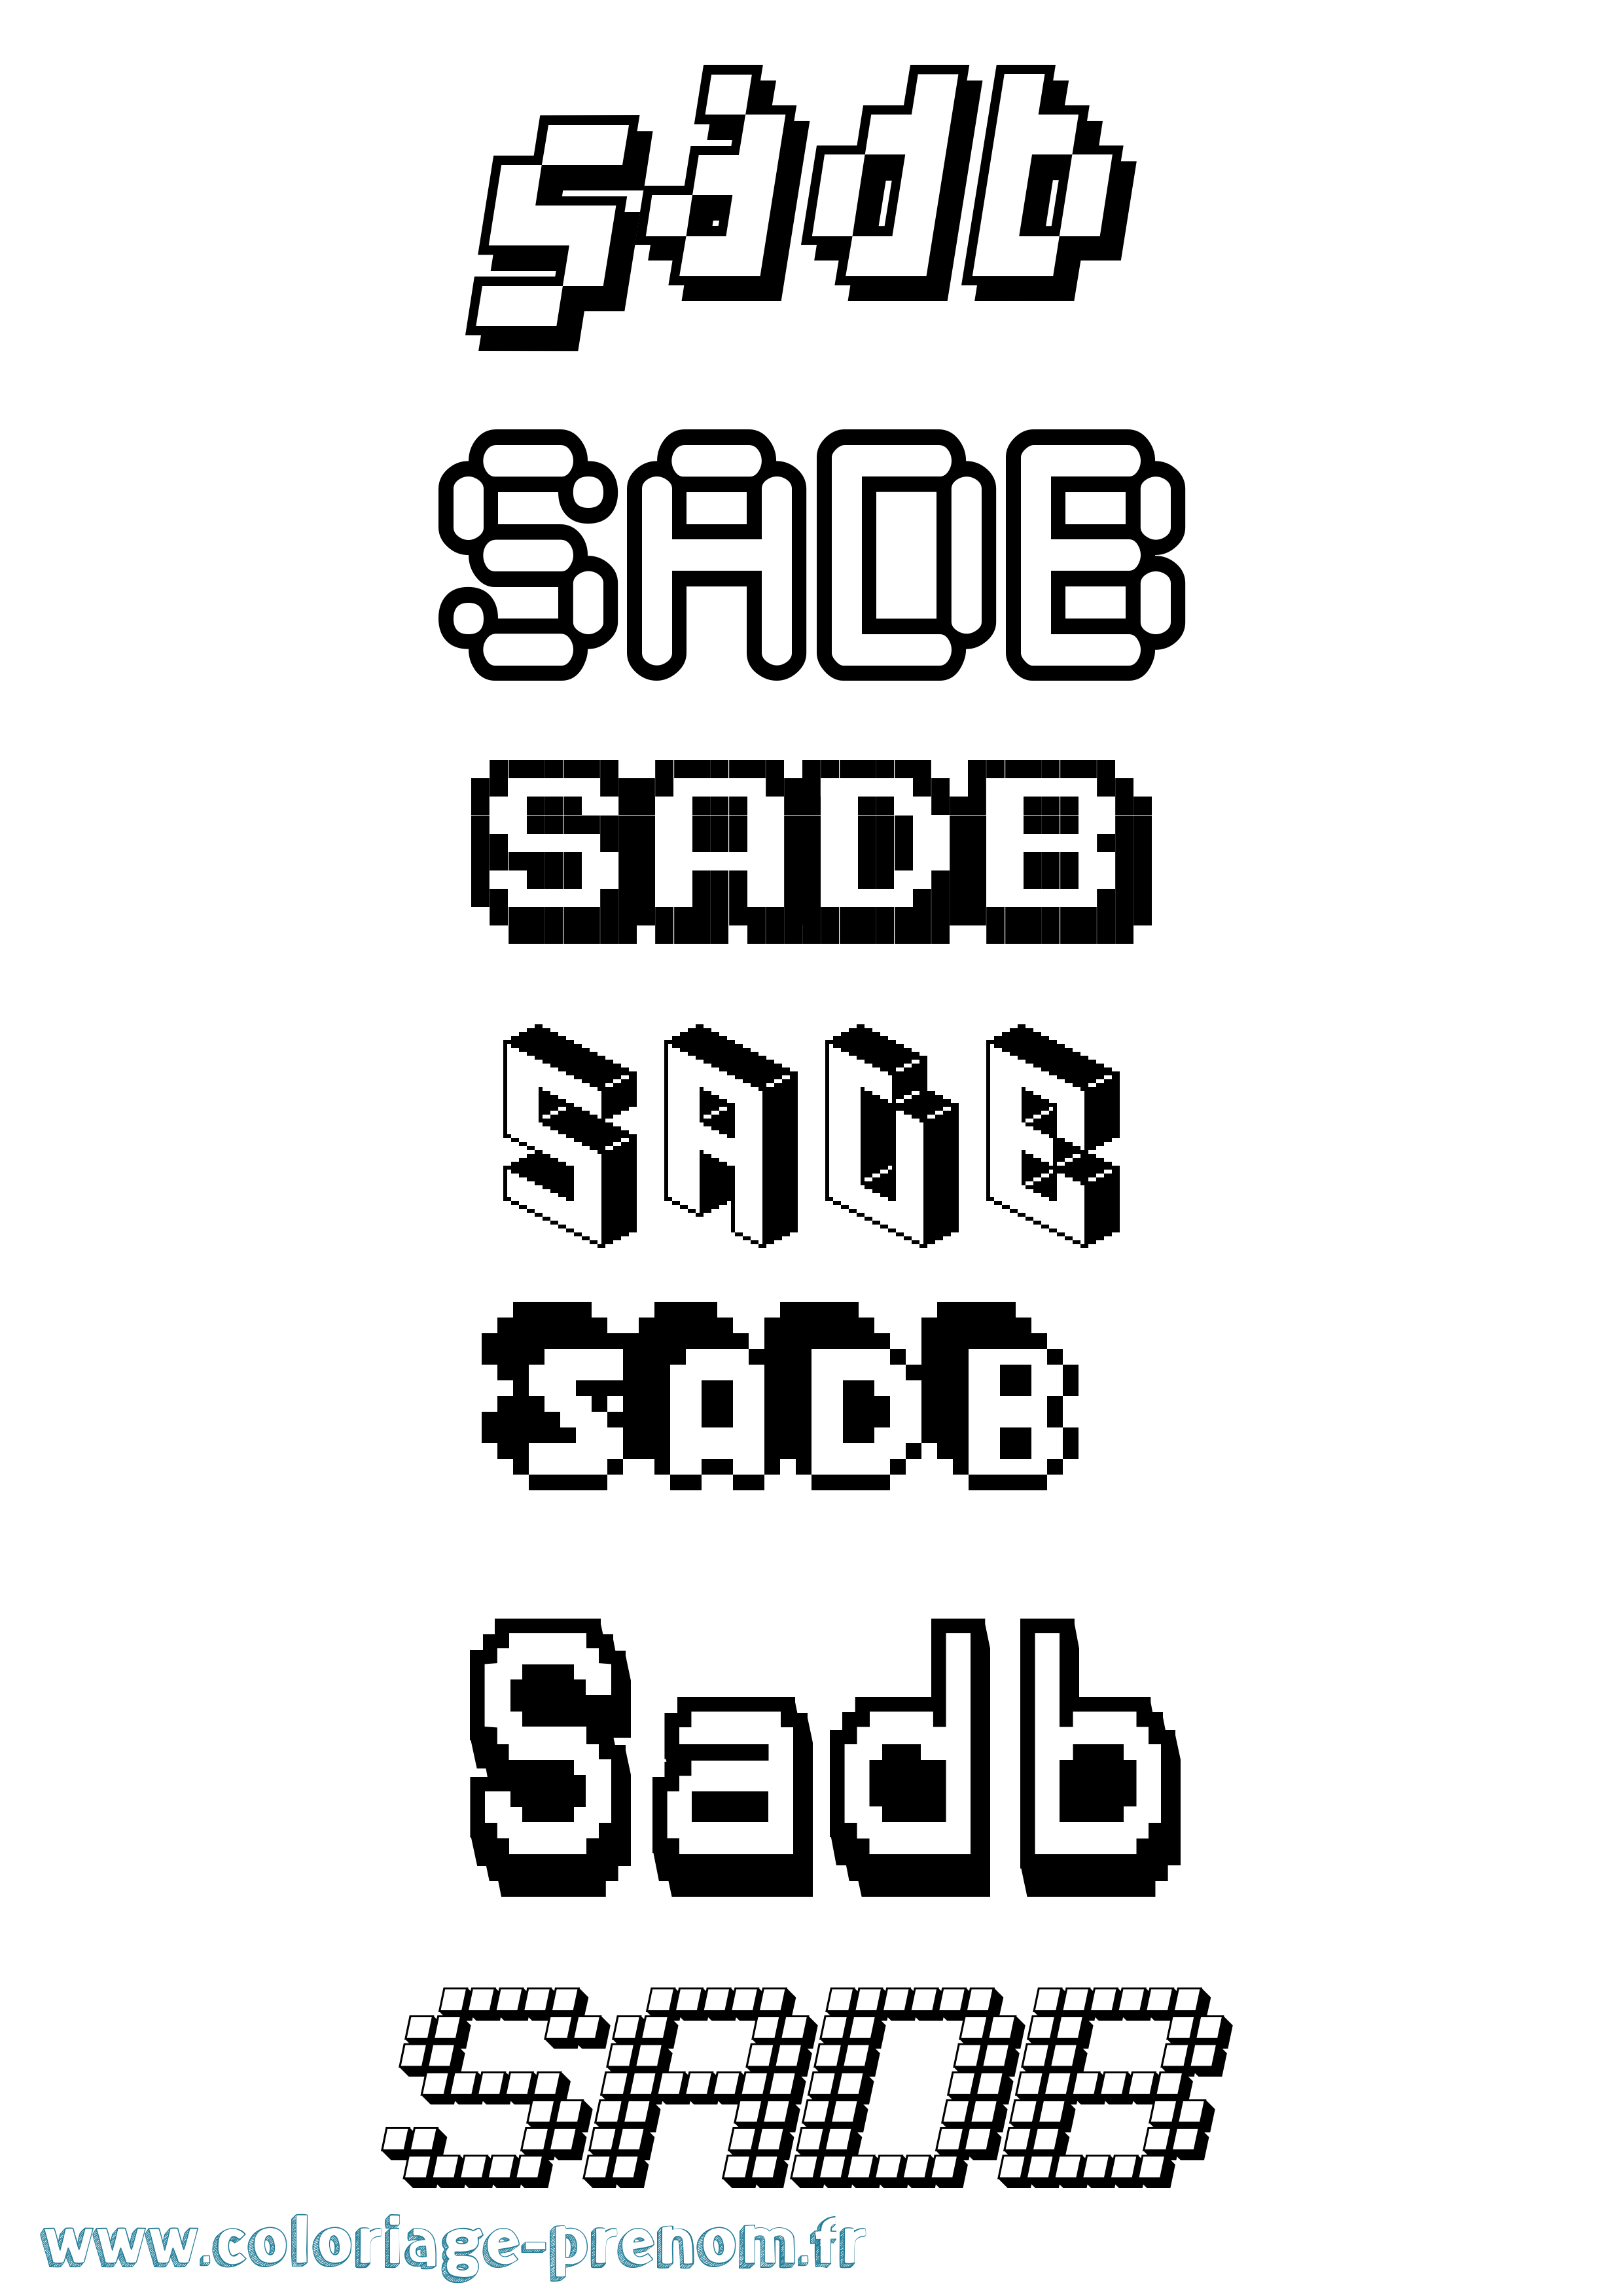 Coloriage prénom Sadb Pixel